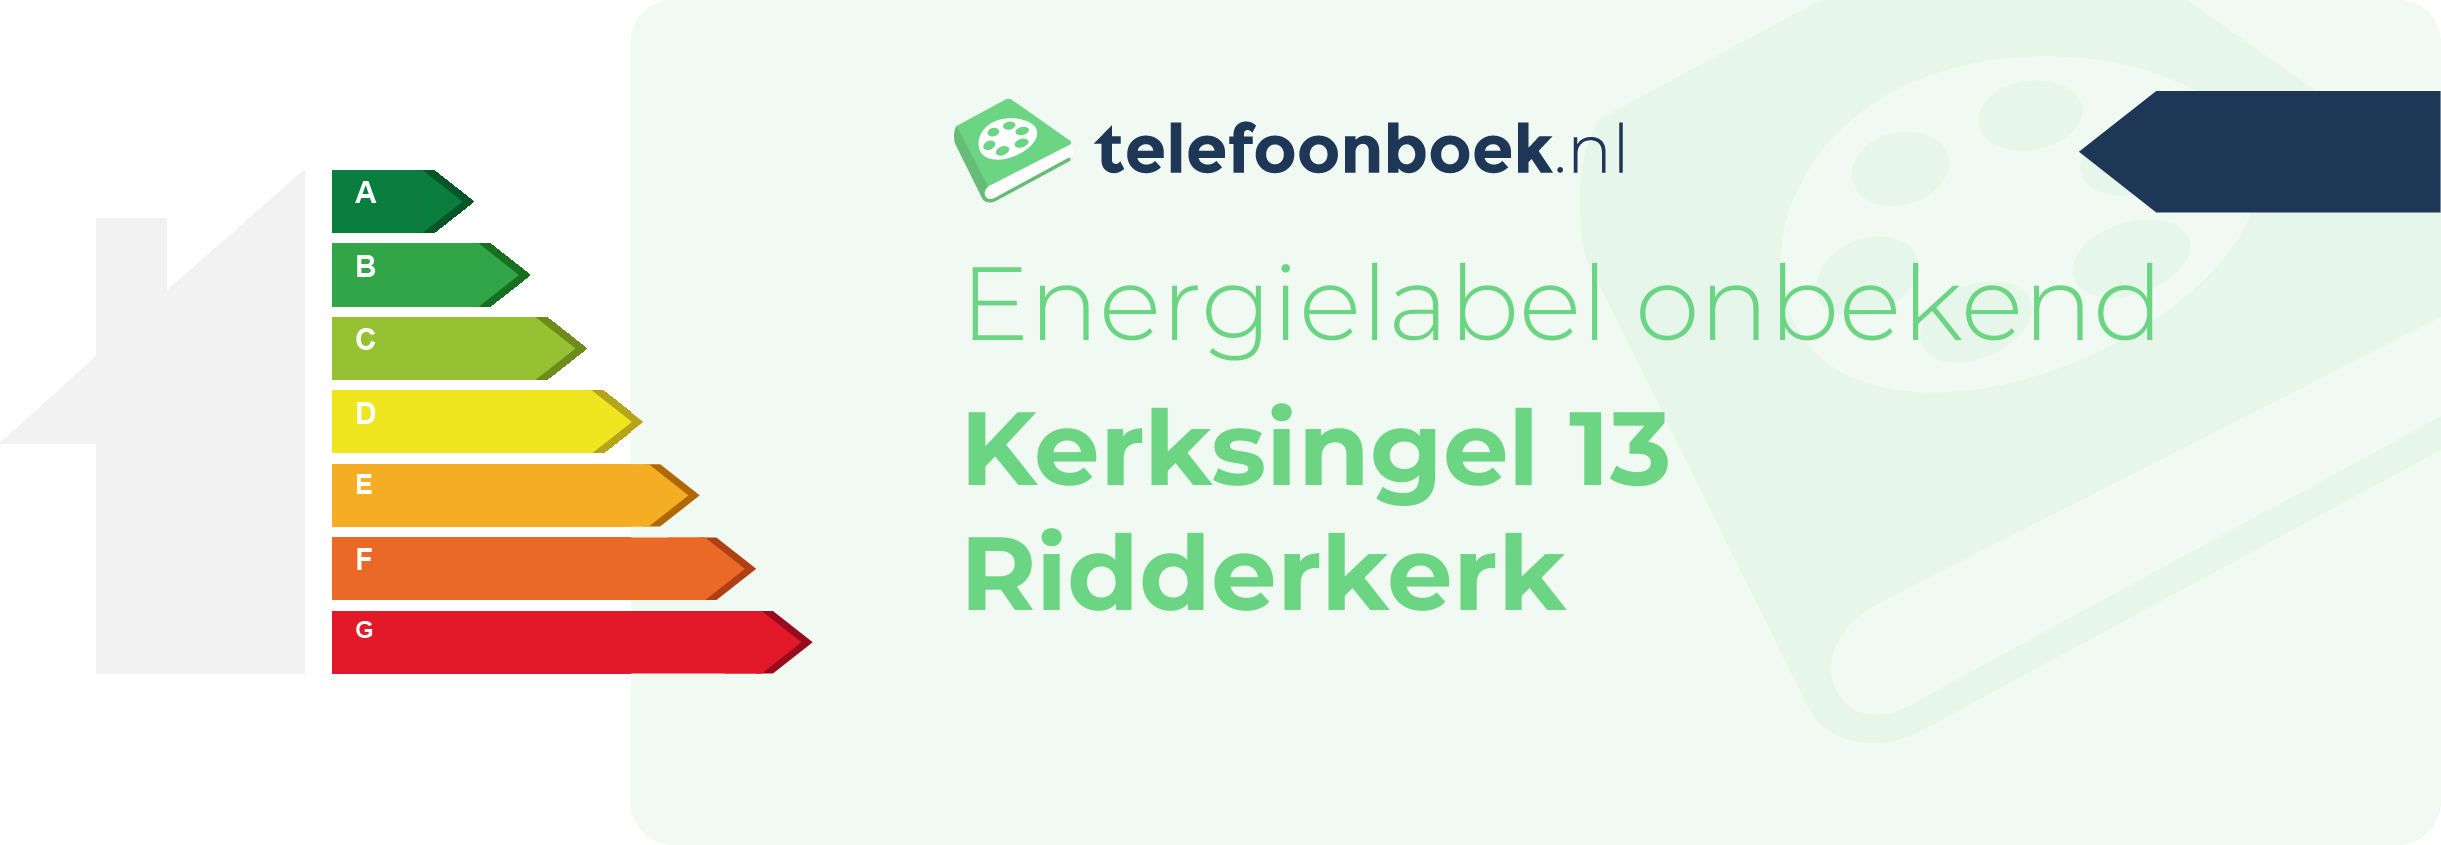 Energielabel Kerksingel 13 Ridderkerk